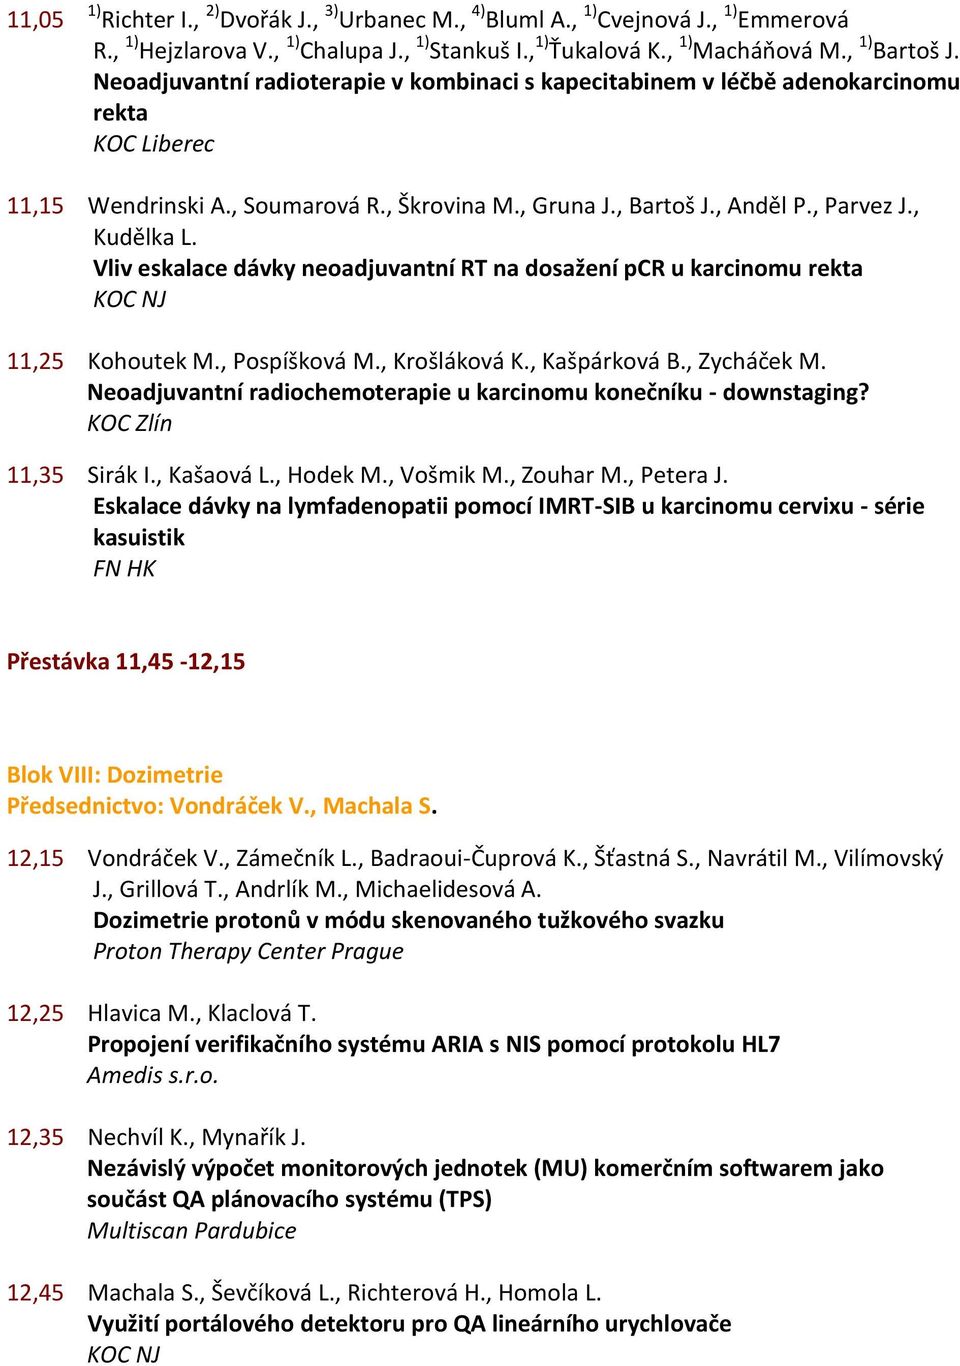 Vliv eskalace dávky neoadjuvantní RT na dosažení pcr u karcinomu rekta 11,25 Kohoutek M., Pospíšková M., Krošláková K., Kašpárková B., Zycháček M.